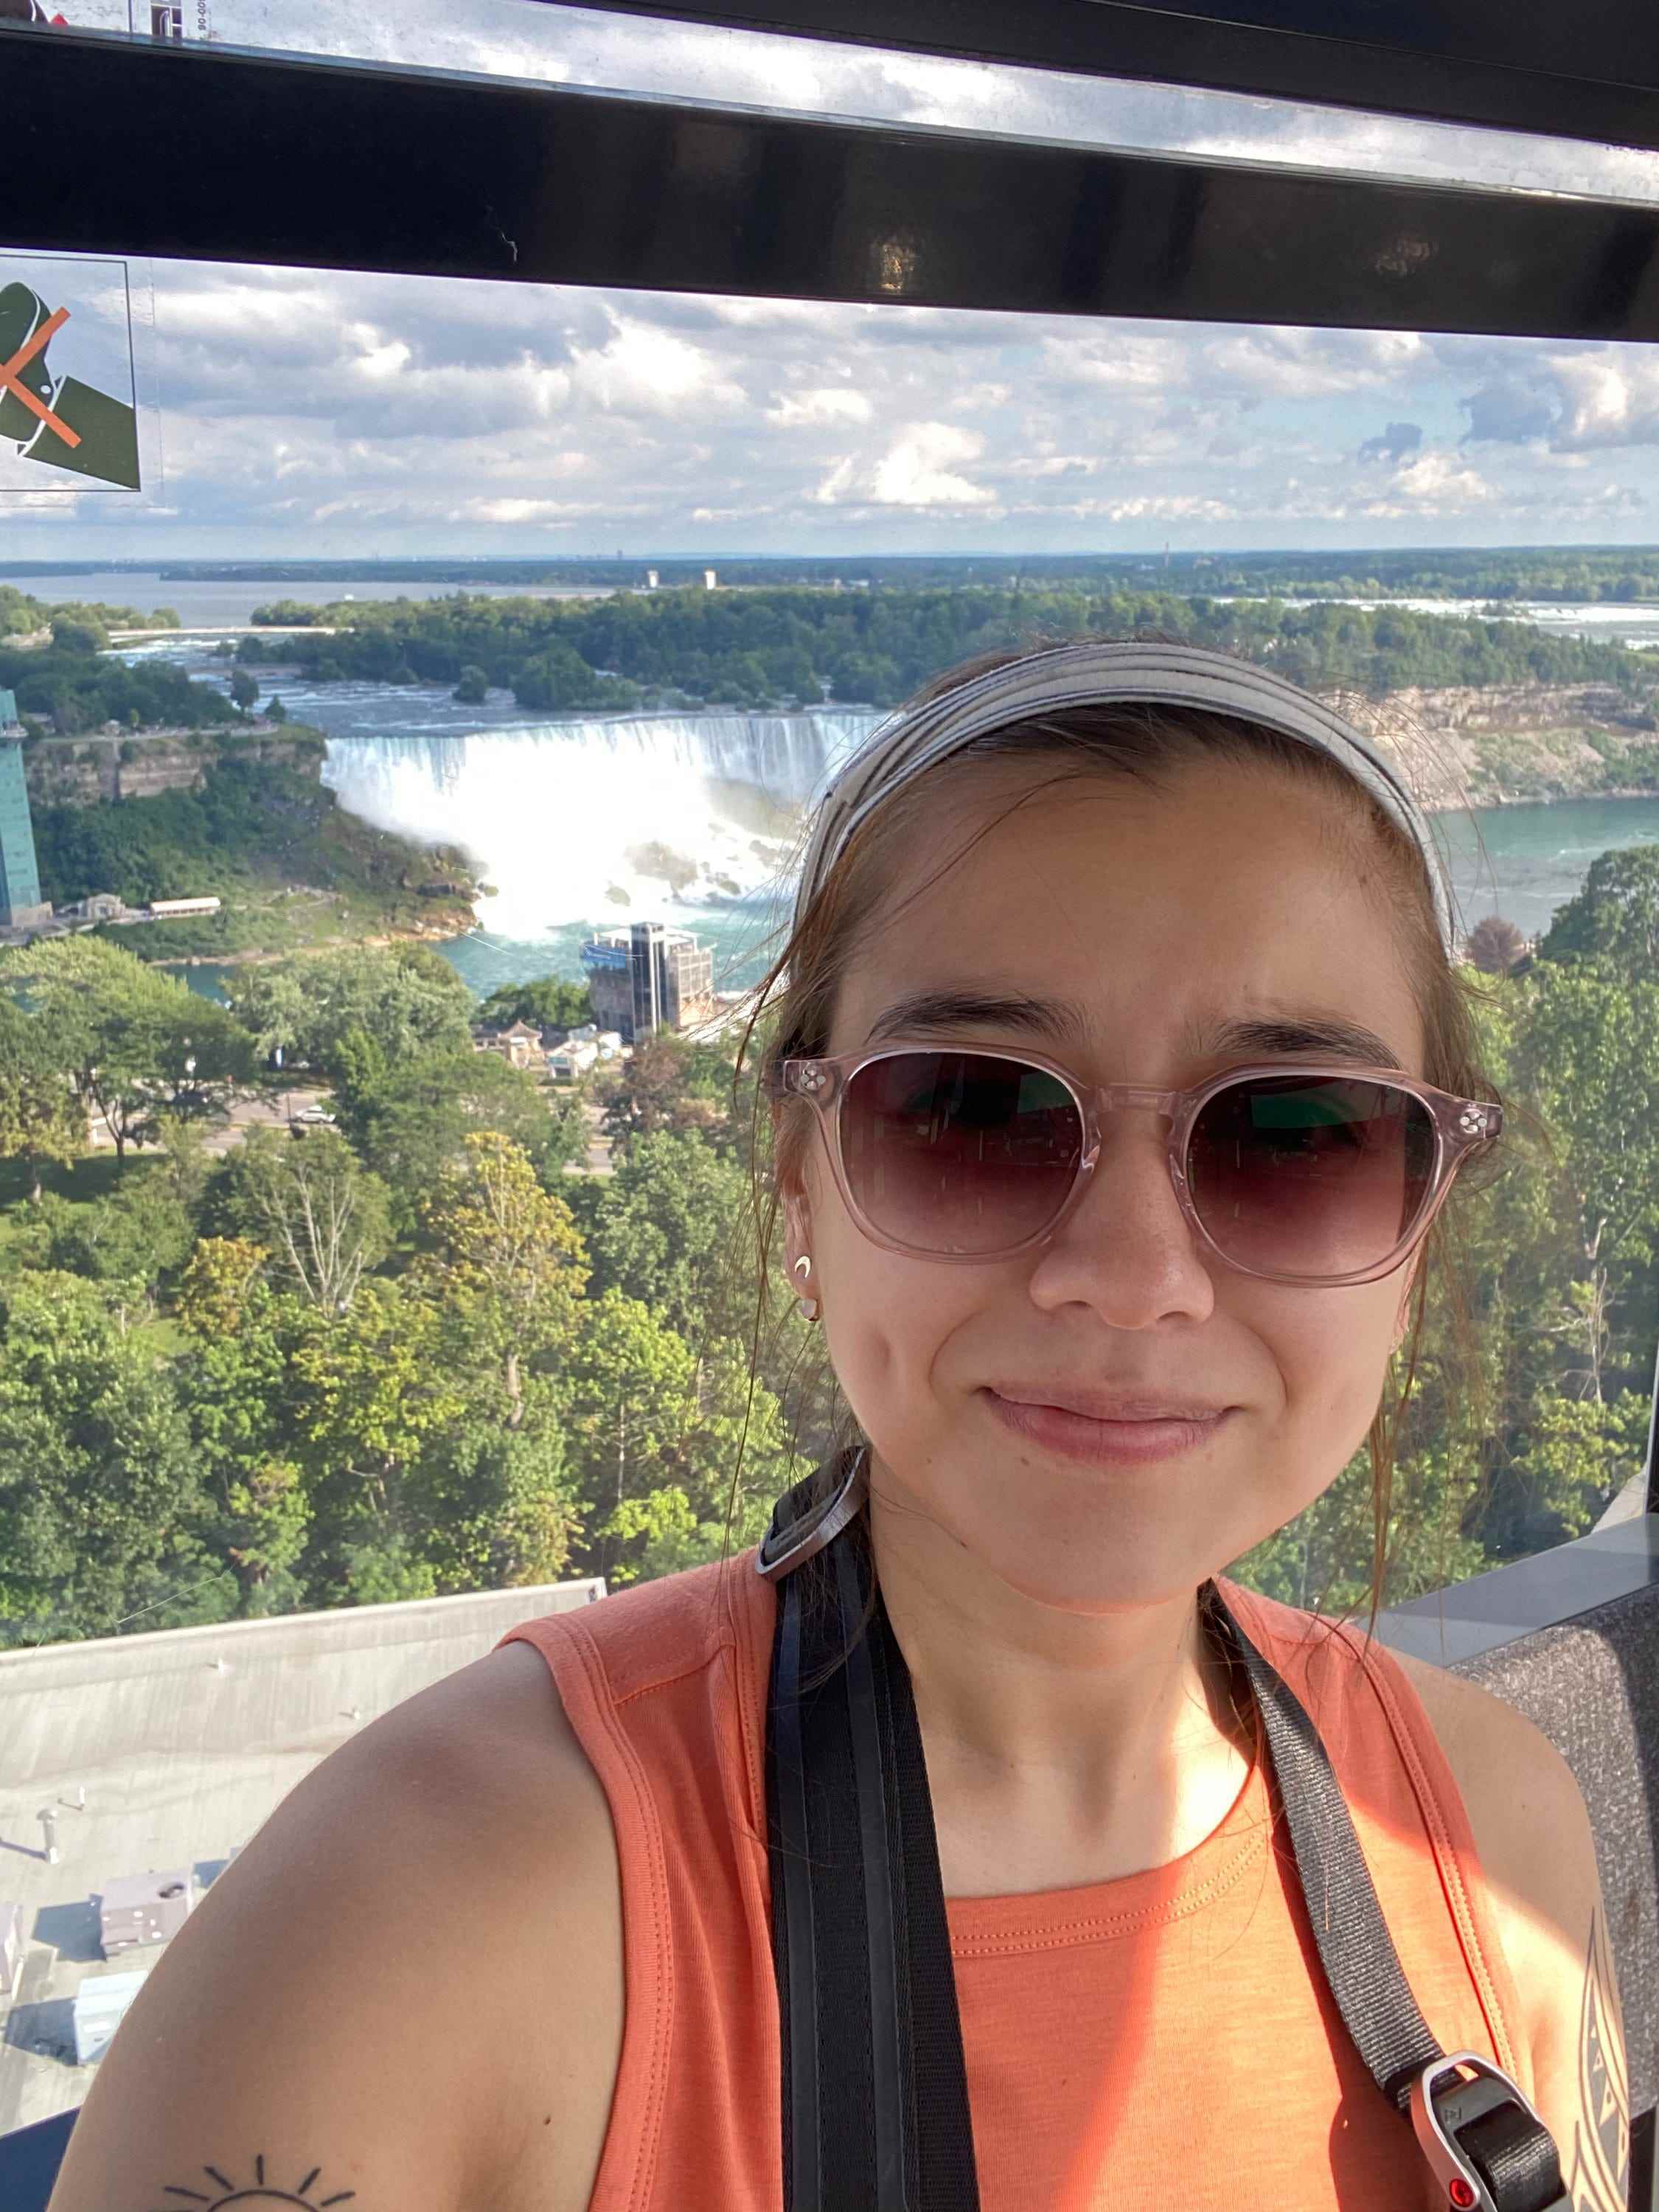 Himmelsrad der Niagarafälle